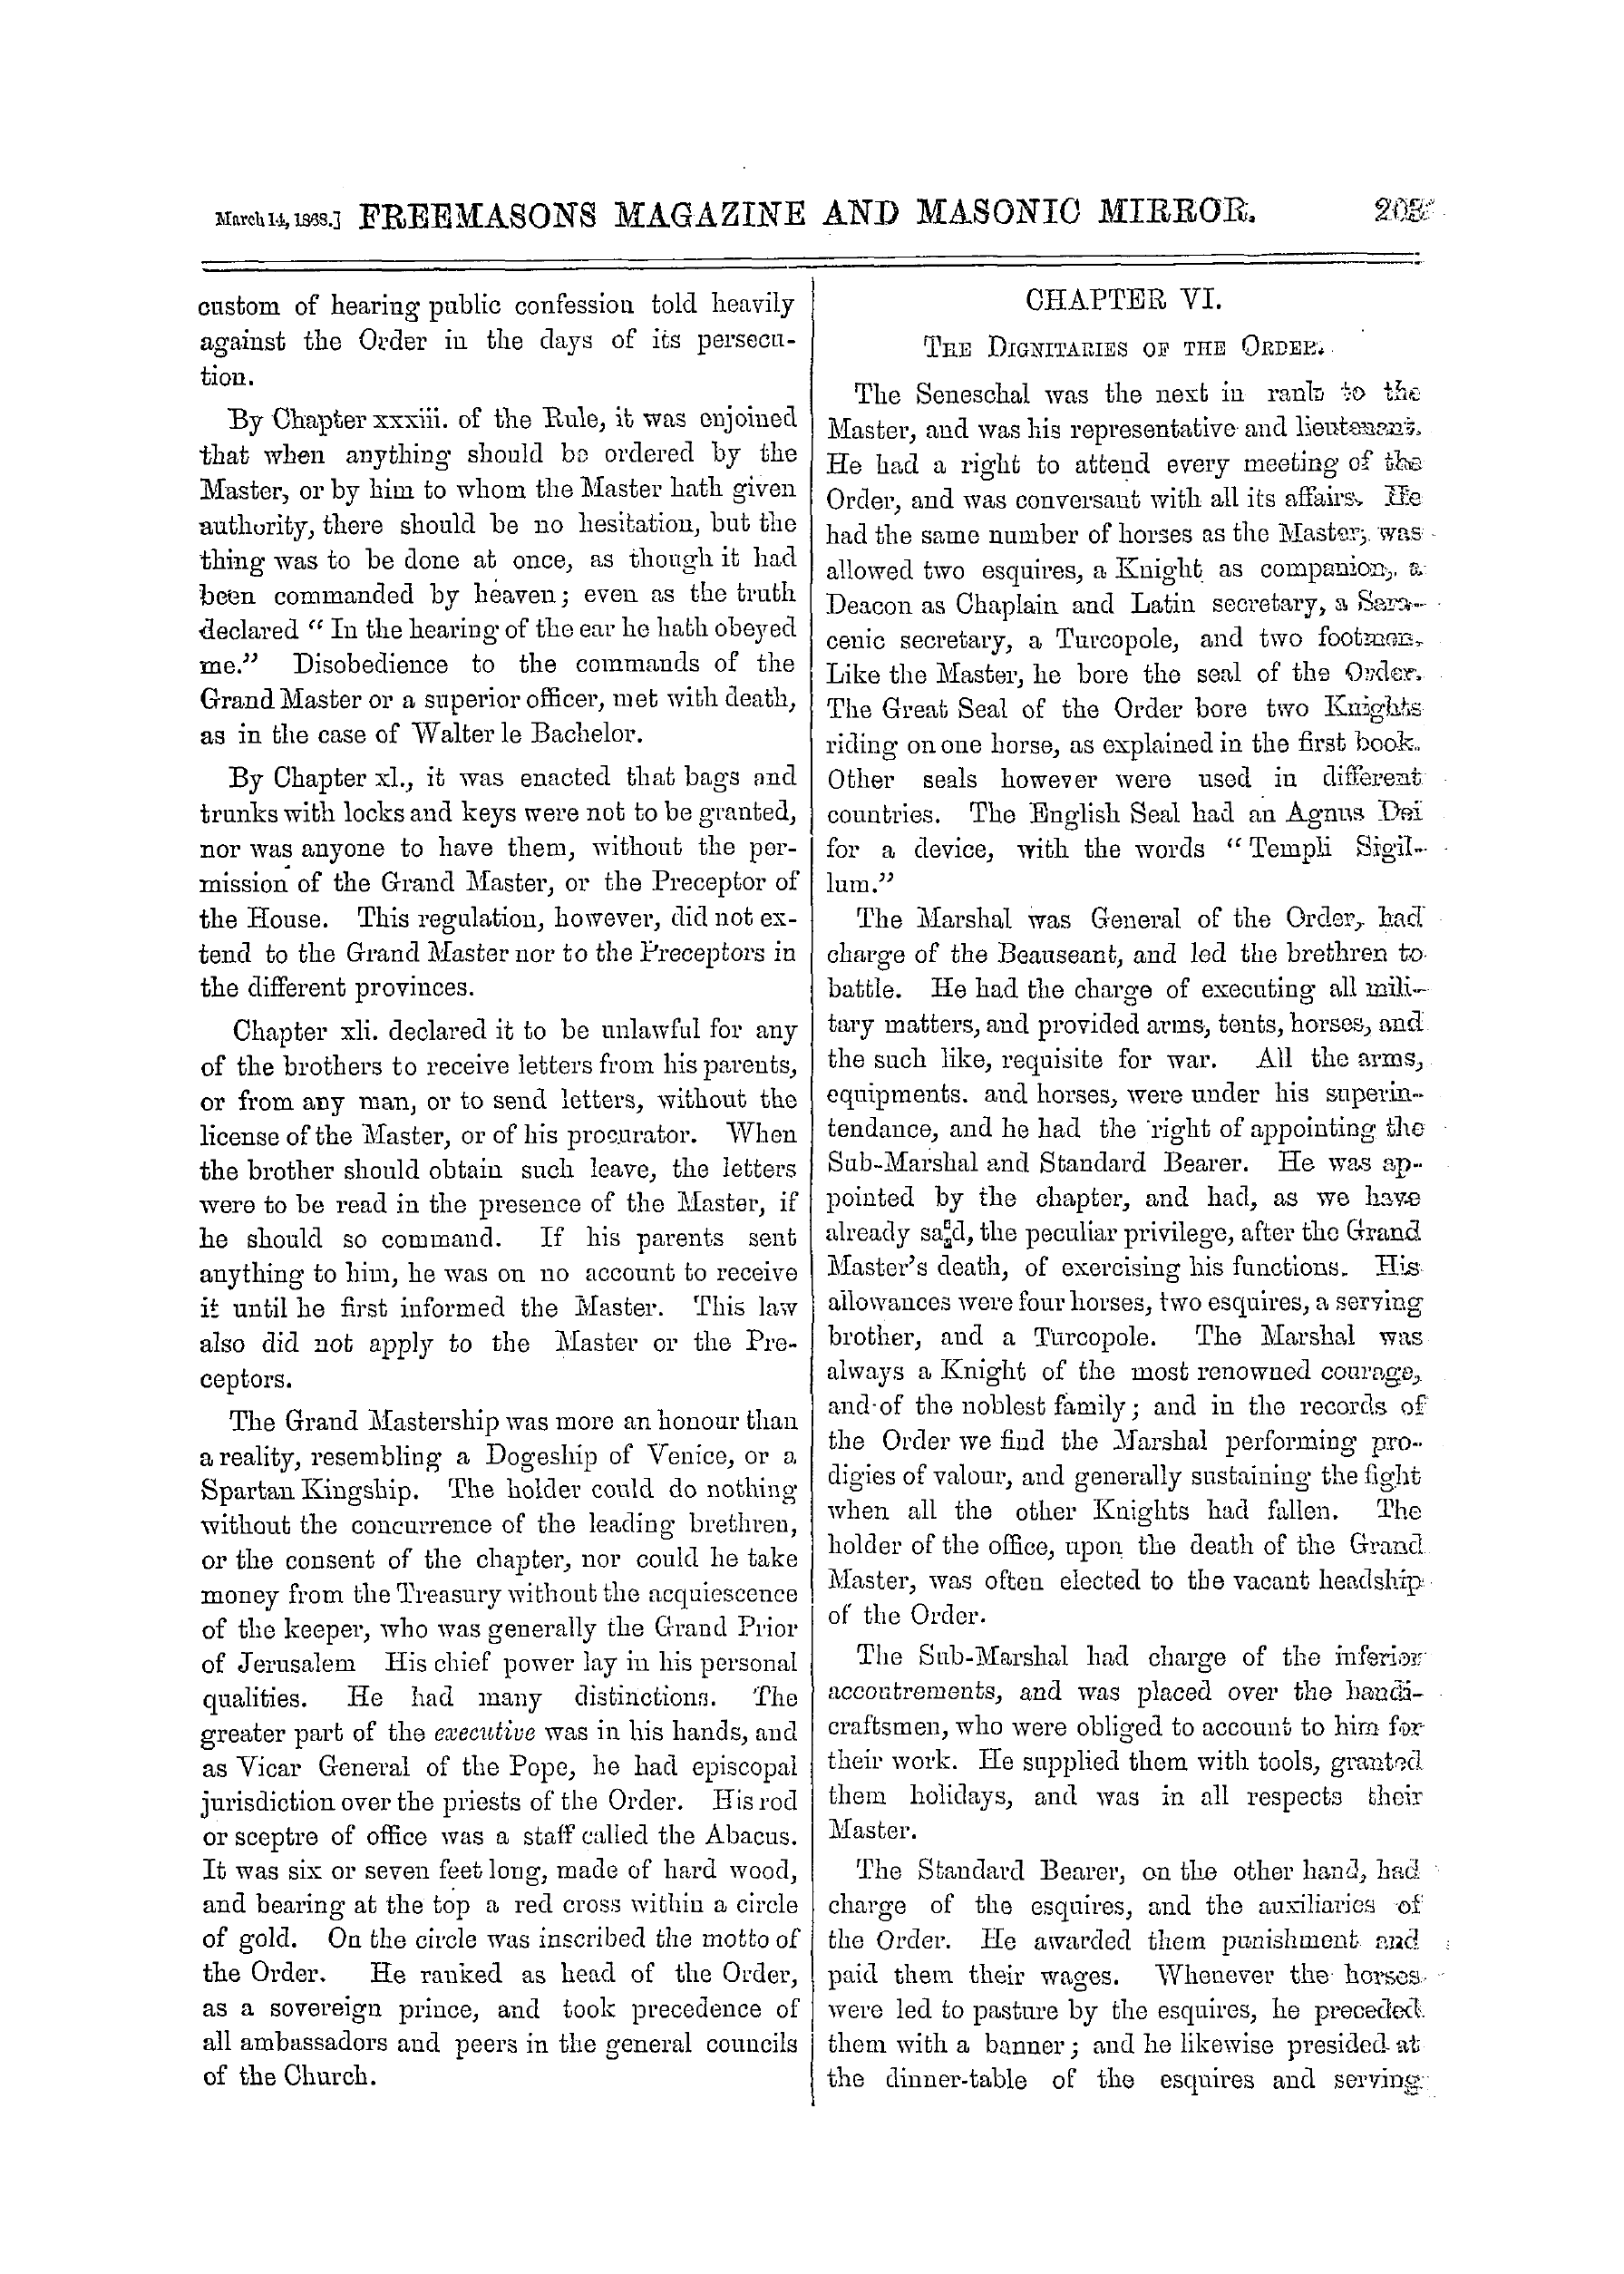 The Freemasons' Monthly Magazine: 1868-03-14: 3